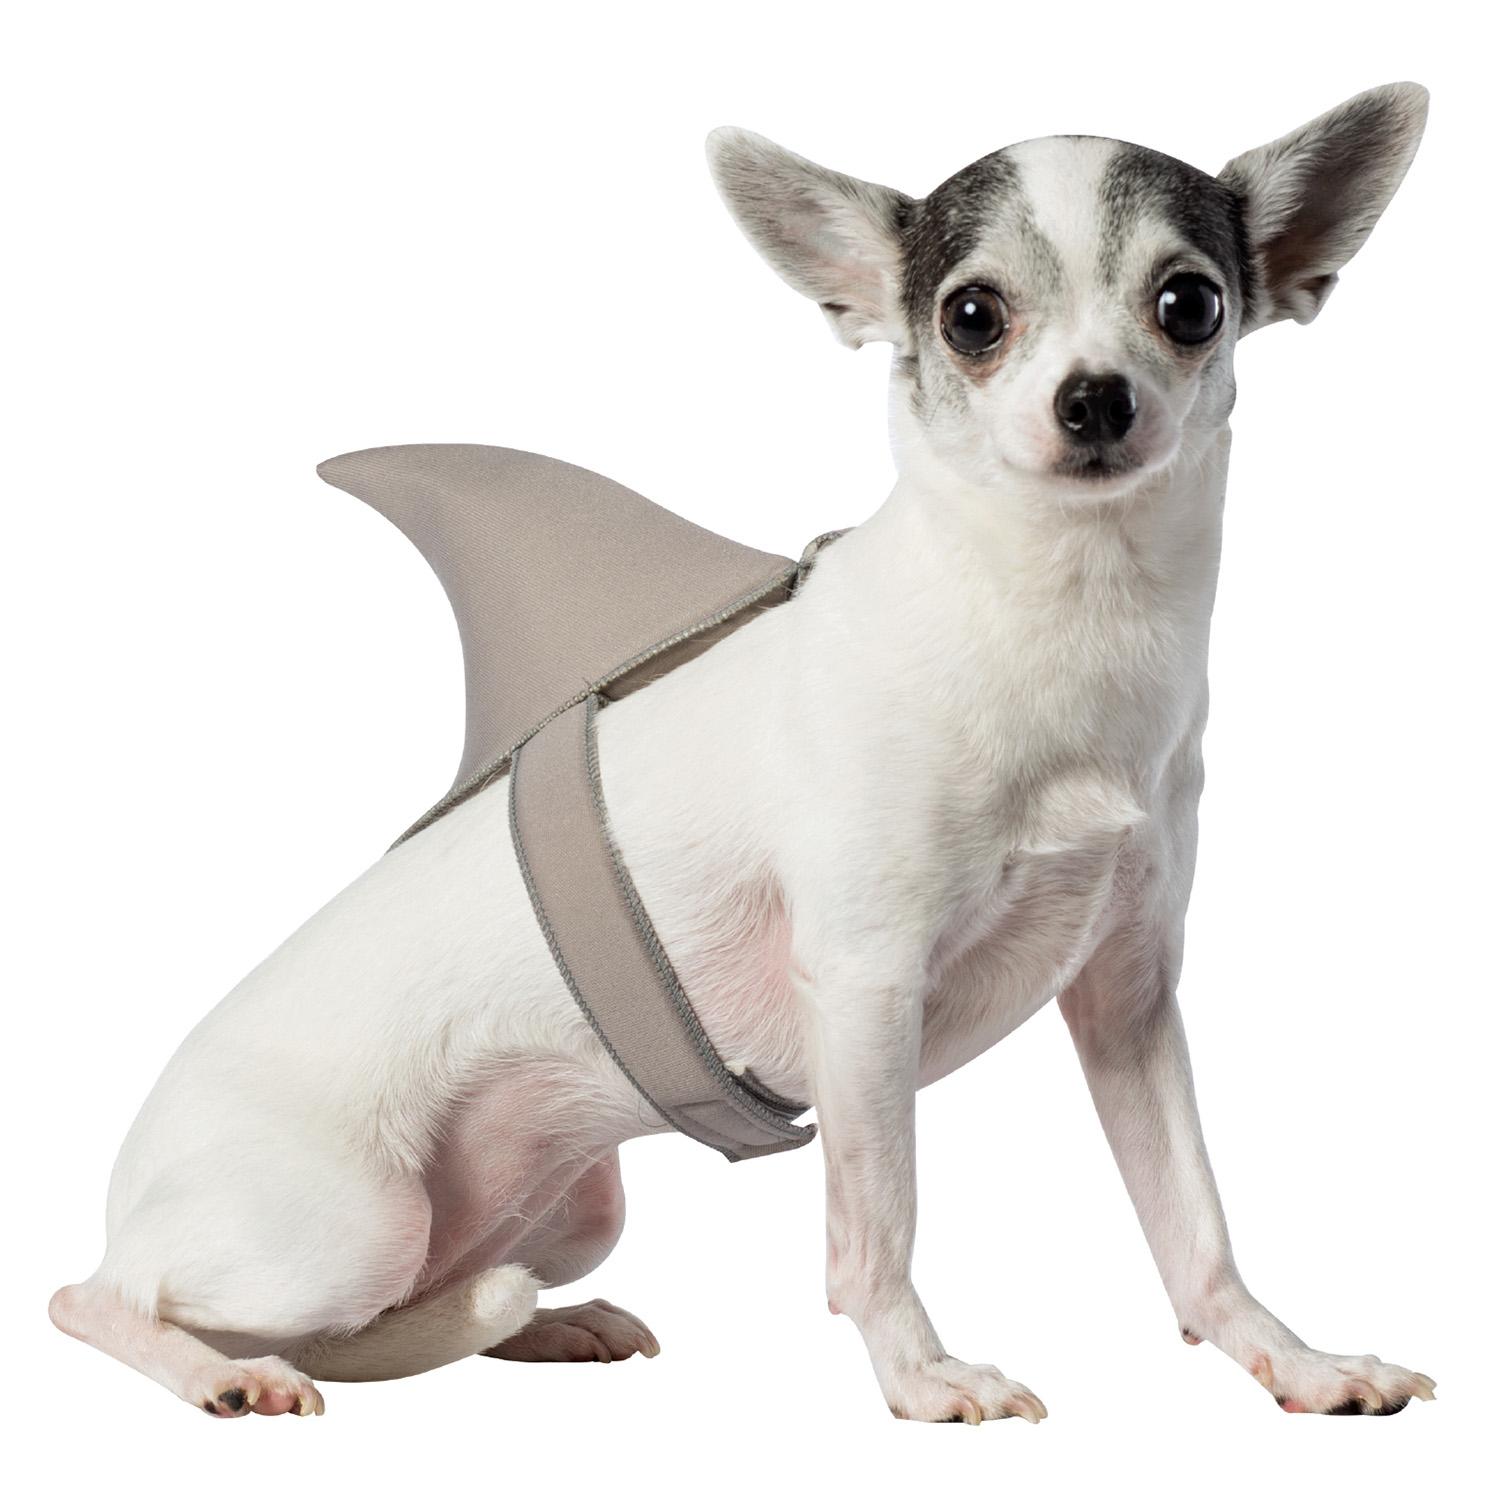 Rasta Imposta Shark Fin Dog Costume